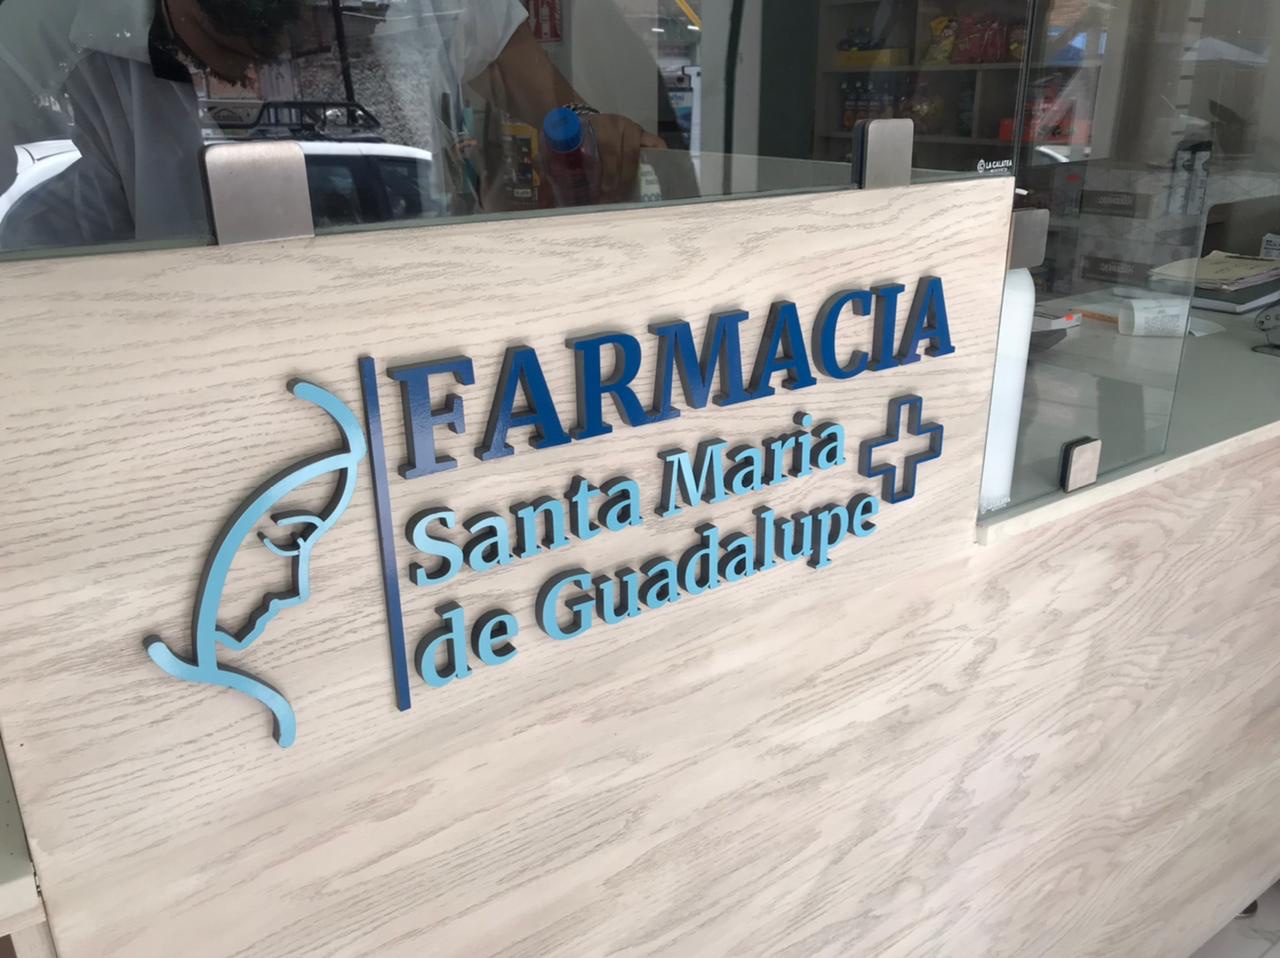 FARMACIA SMG Señalamientos y Logotipo